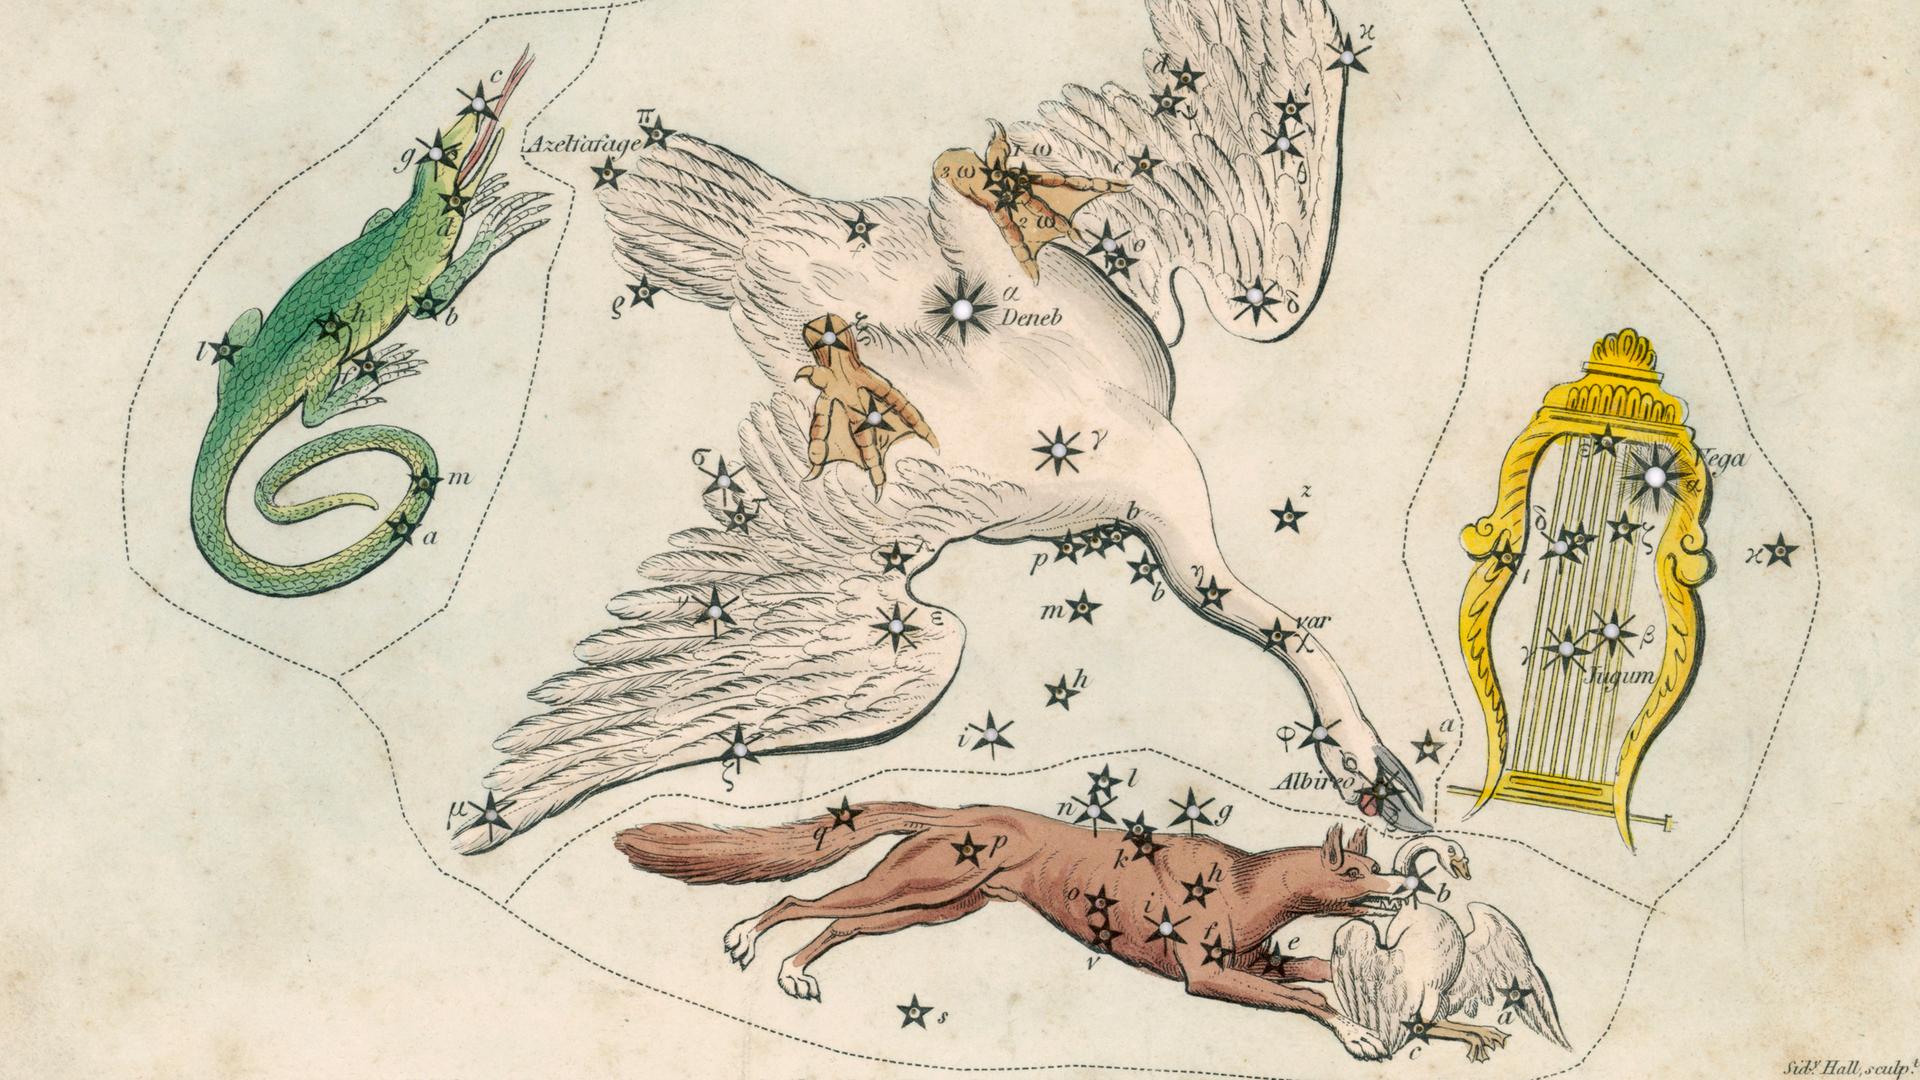 Eine historische Sternkarte illustriert die Sternbilder Fuchs, Eidechse, Schwan und Leier in typischen Darstellungen ihrer Zeit.